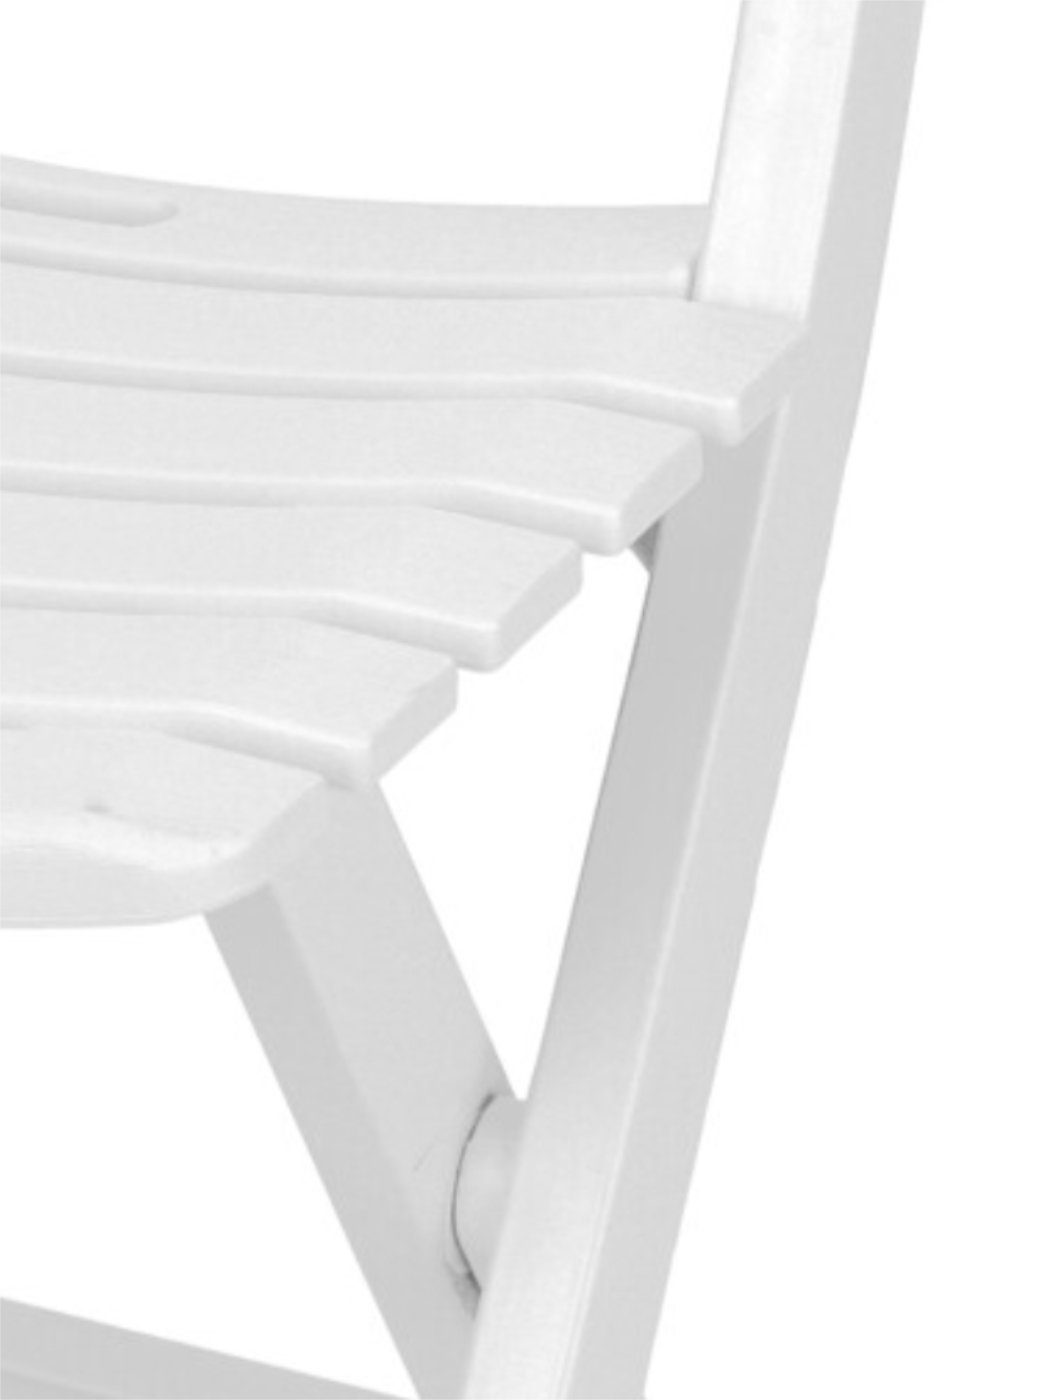 Progarden Klappstuhl Komodo Weiß, klappbar Leichtgewicht Weiß